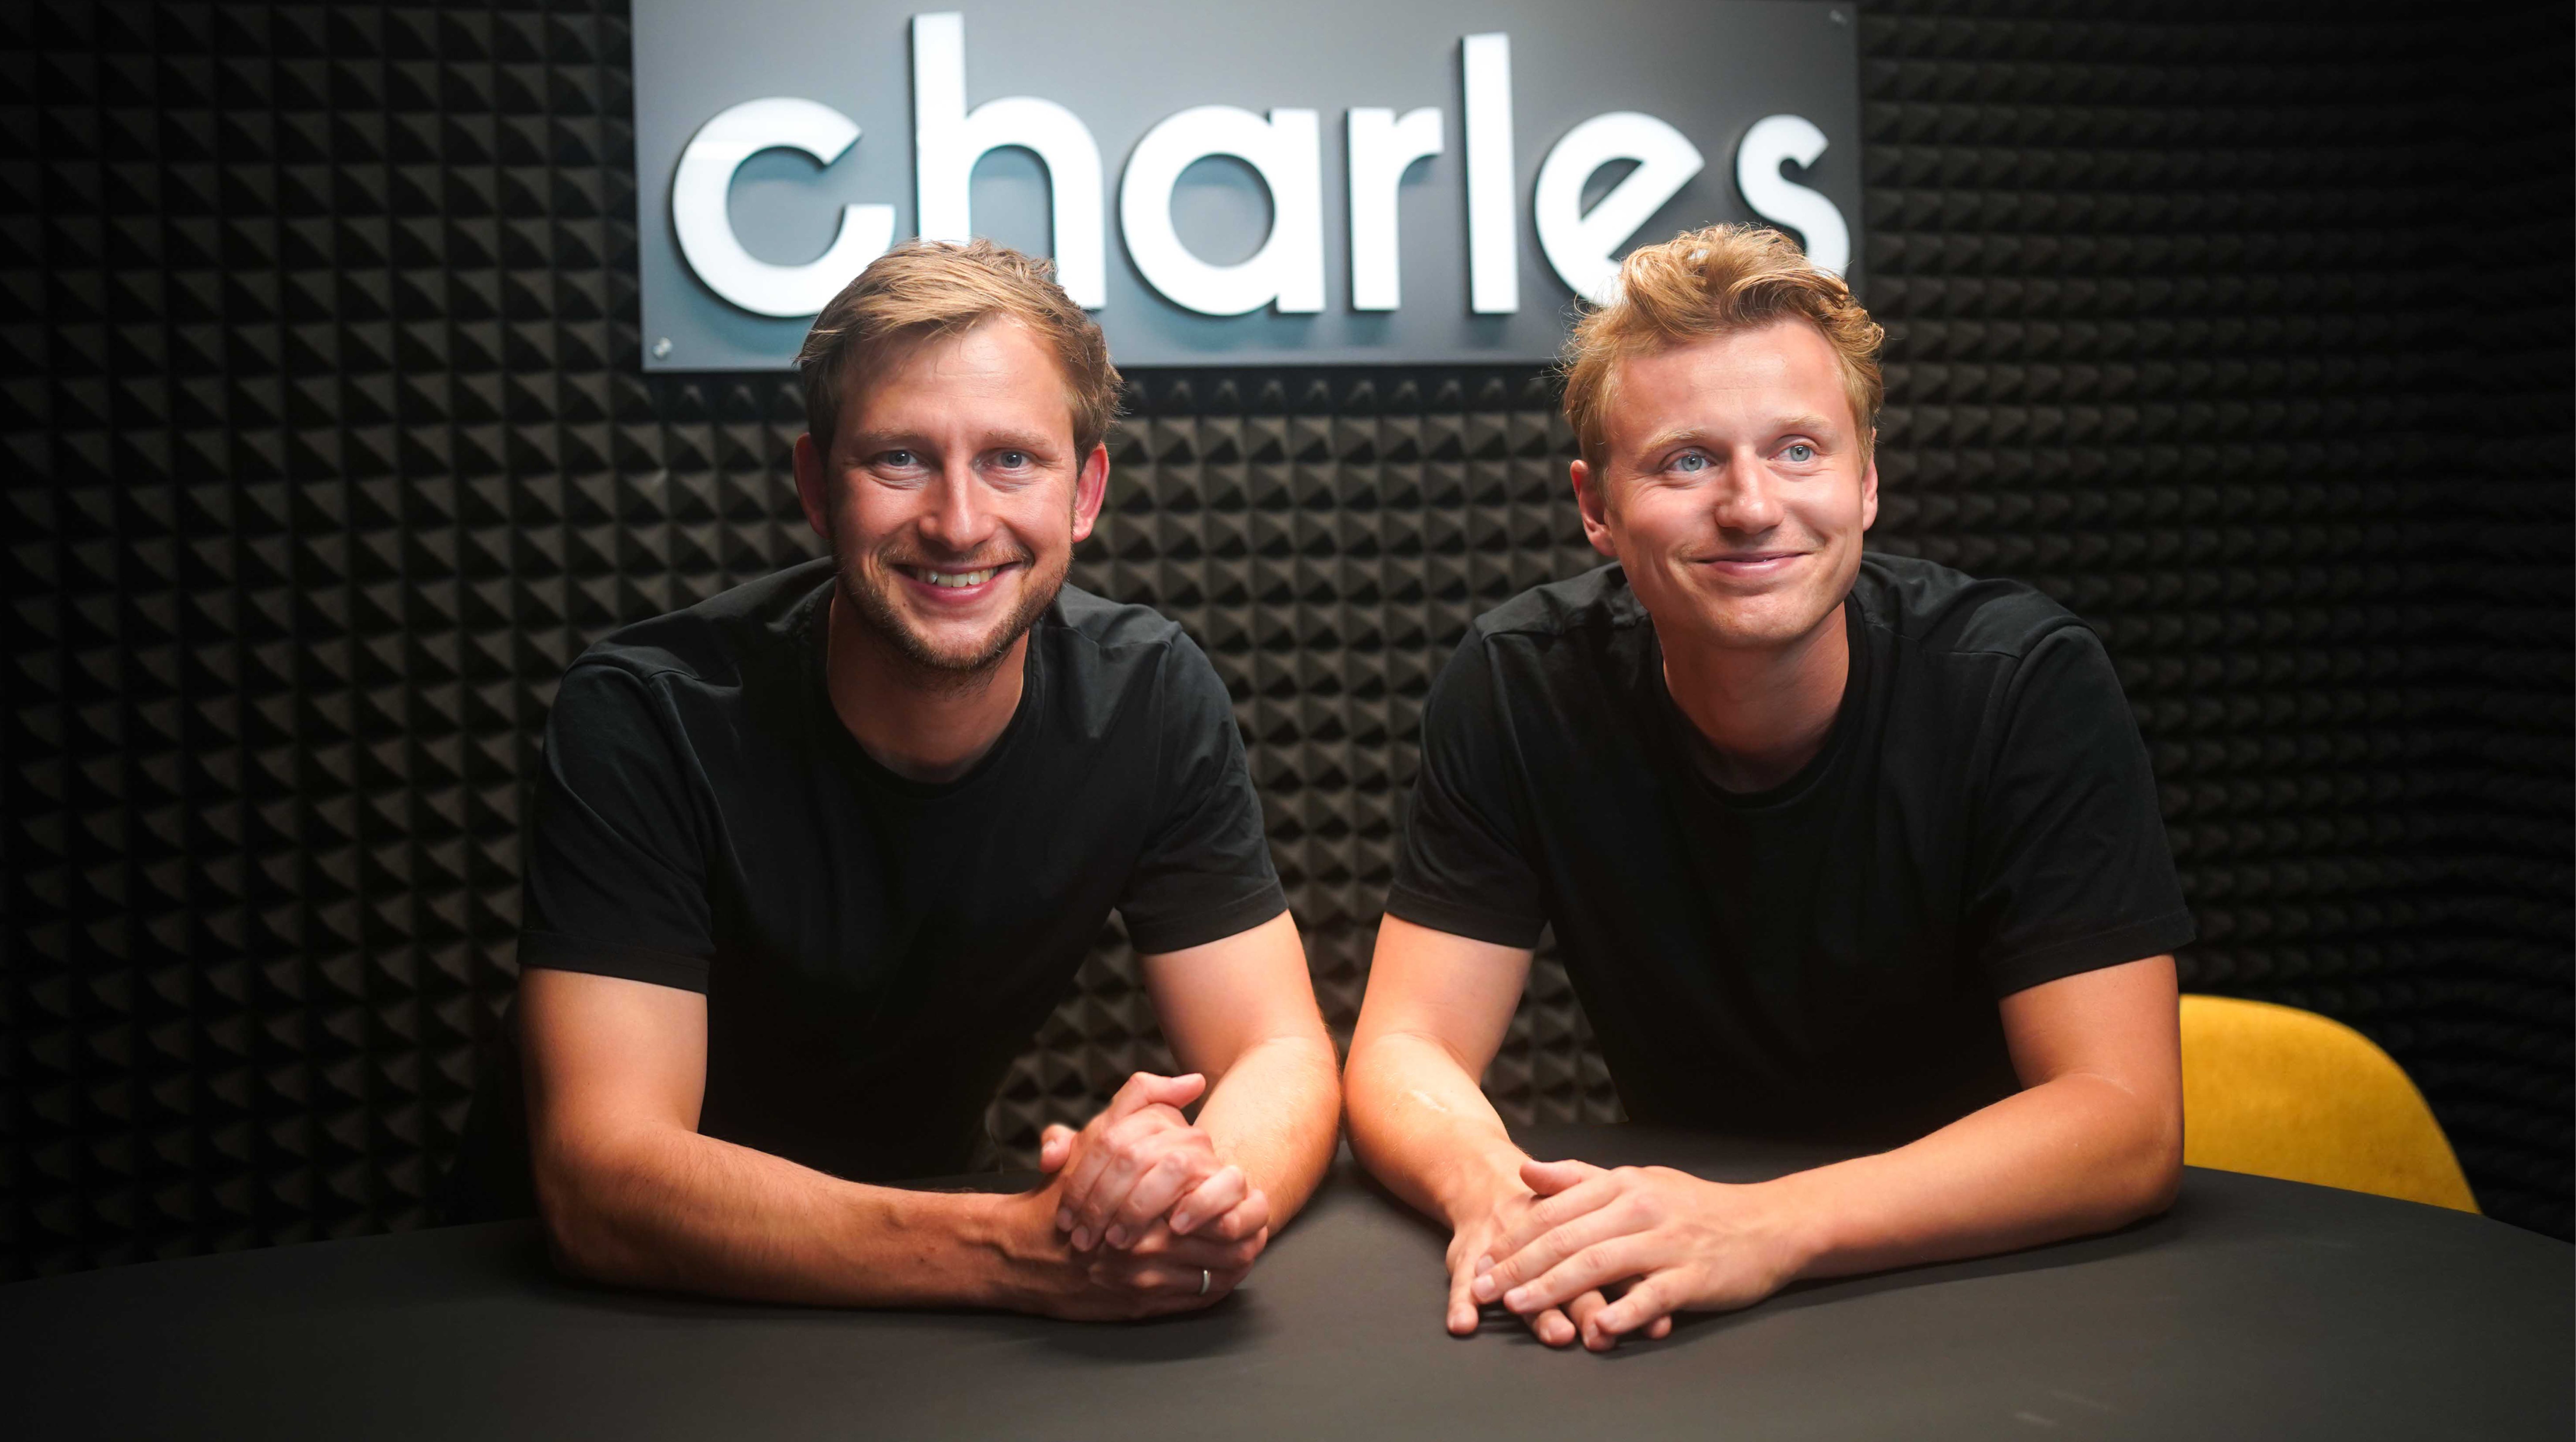 Charles erhält $20M Series A angeführt von Salesforce Ventures, um eCommerce in WhatsApp zu ermöglichen